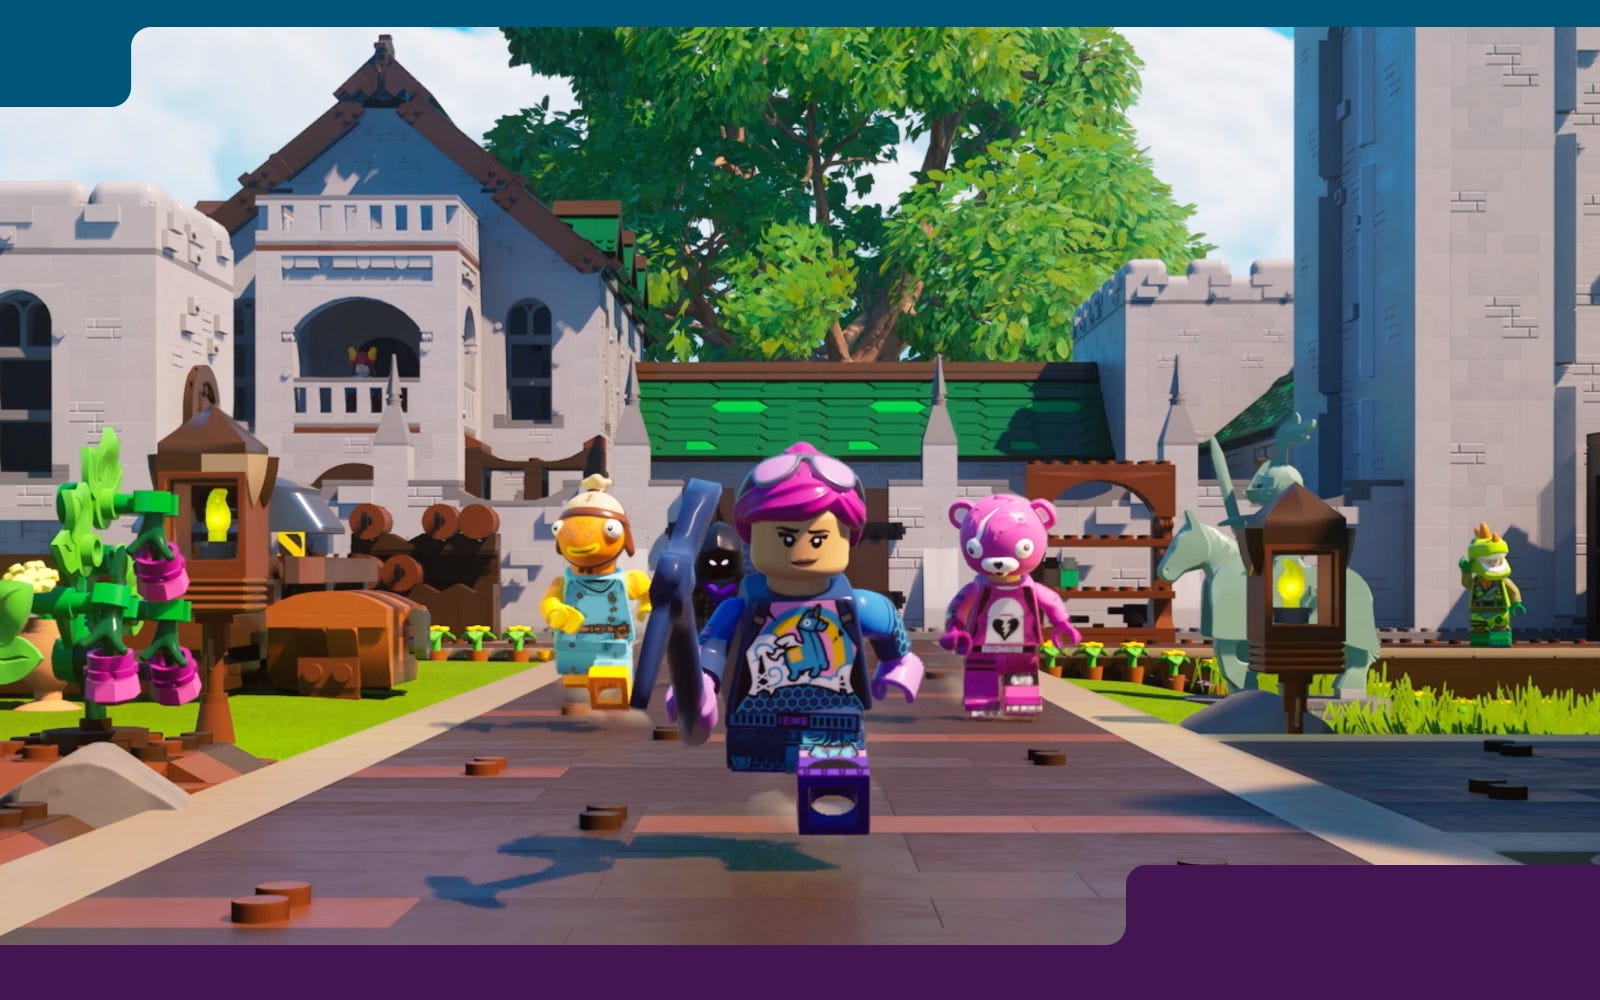 LEGO X Epic Games : l'annonce officielle du jeu LEGO Fortnite